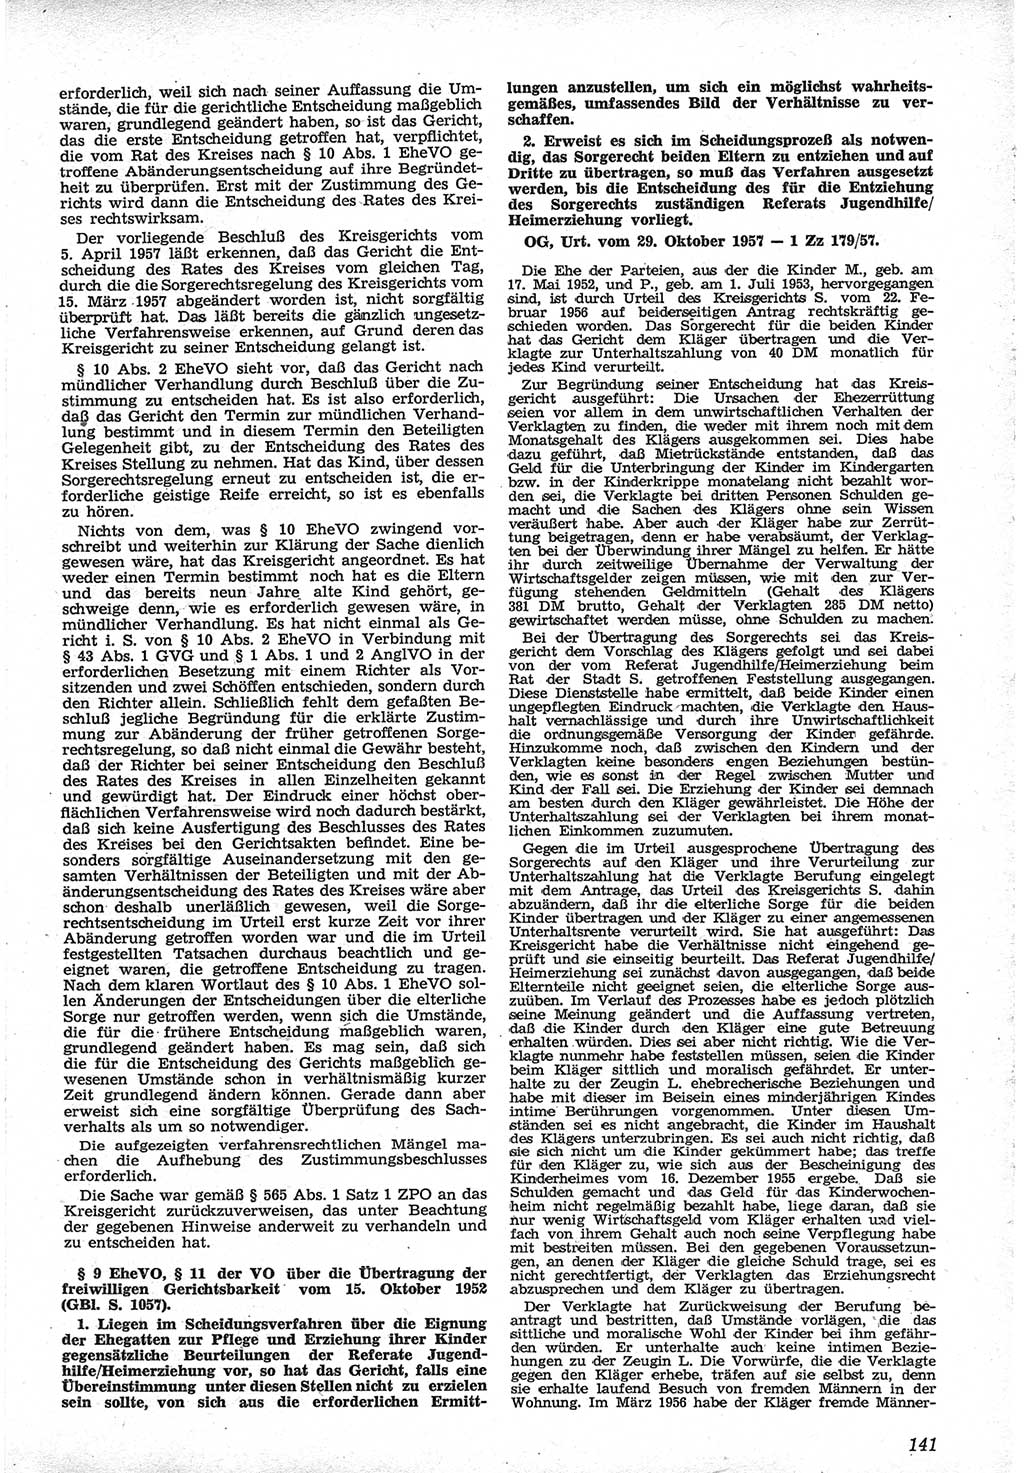 Neue Justiz (NJ), Zeitschrift für Recht und Rechtswissenschaft [Deutsche Demokratische Republik (DDR)], 12. Jahrgang 1958, Seite 141 (NJ DDR 1958, S. 141)